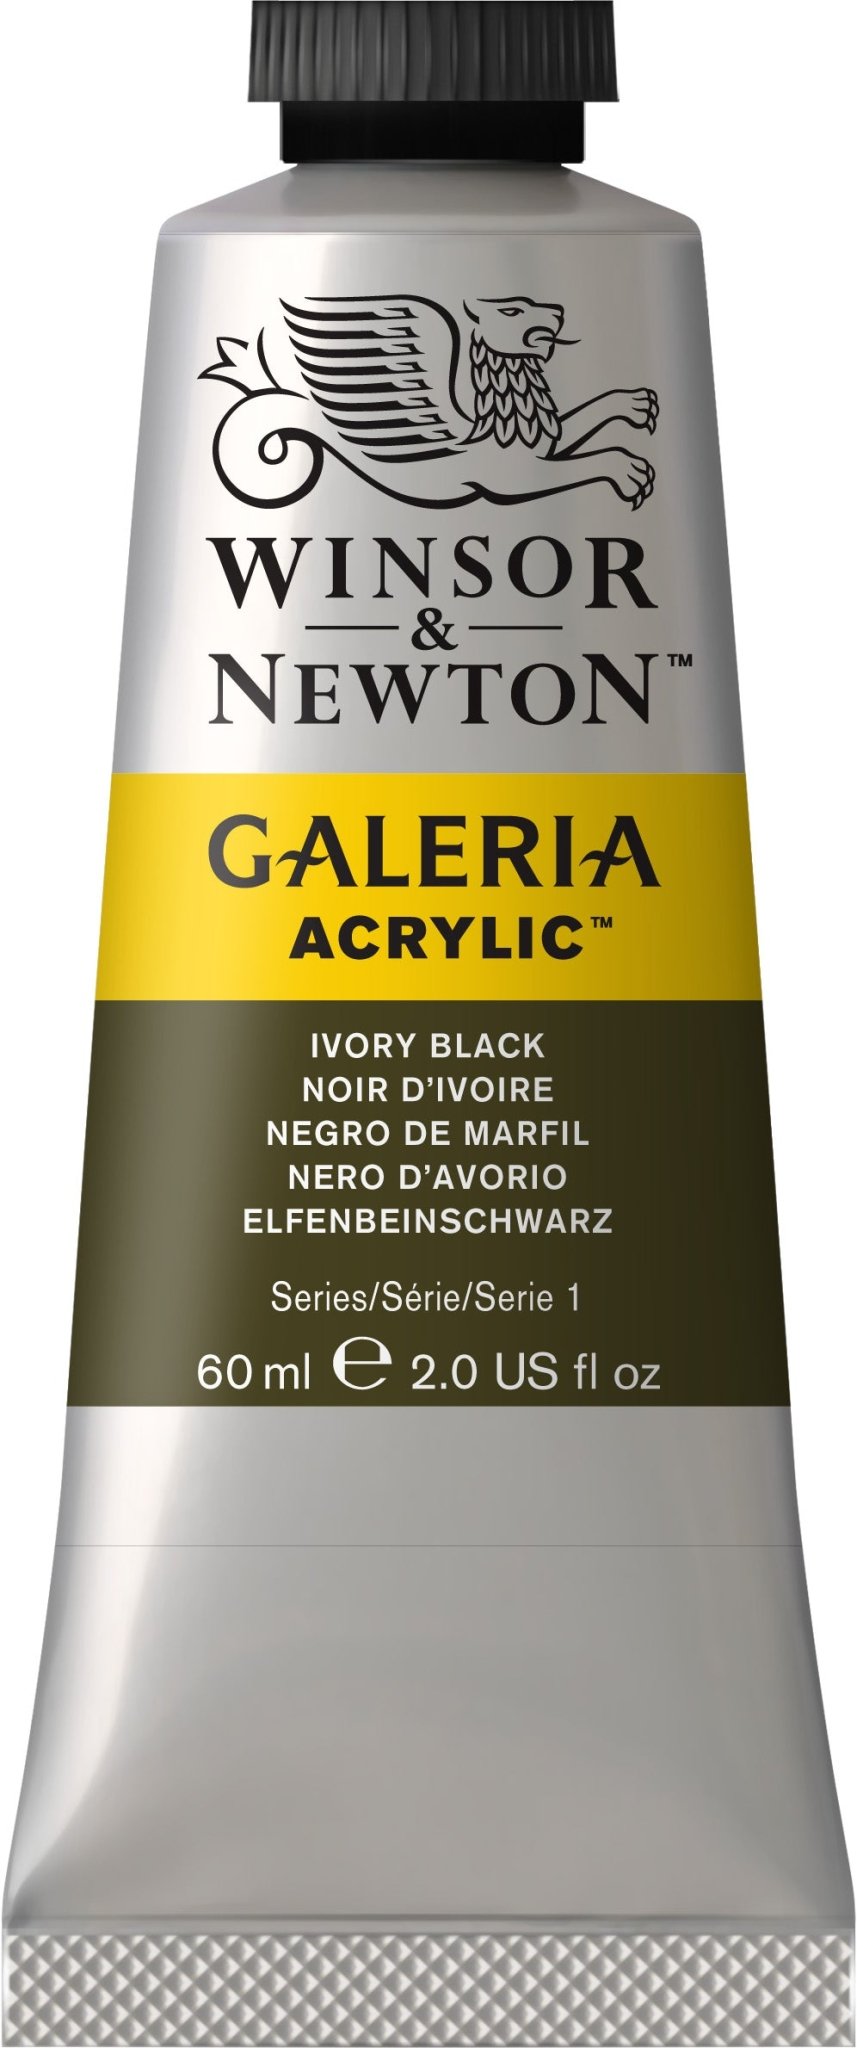 W & N Galeria Acrylic 60ml Ivory Black - theartshop.com.au